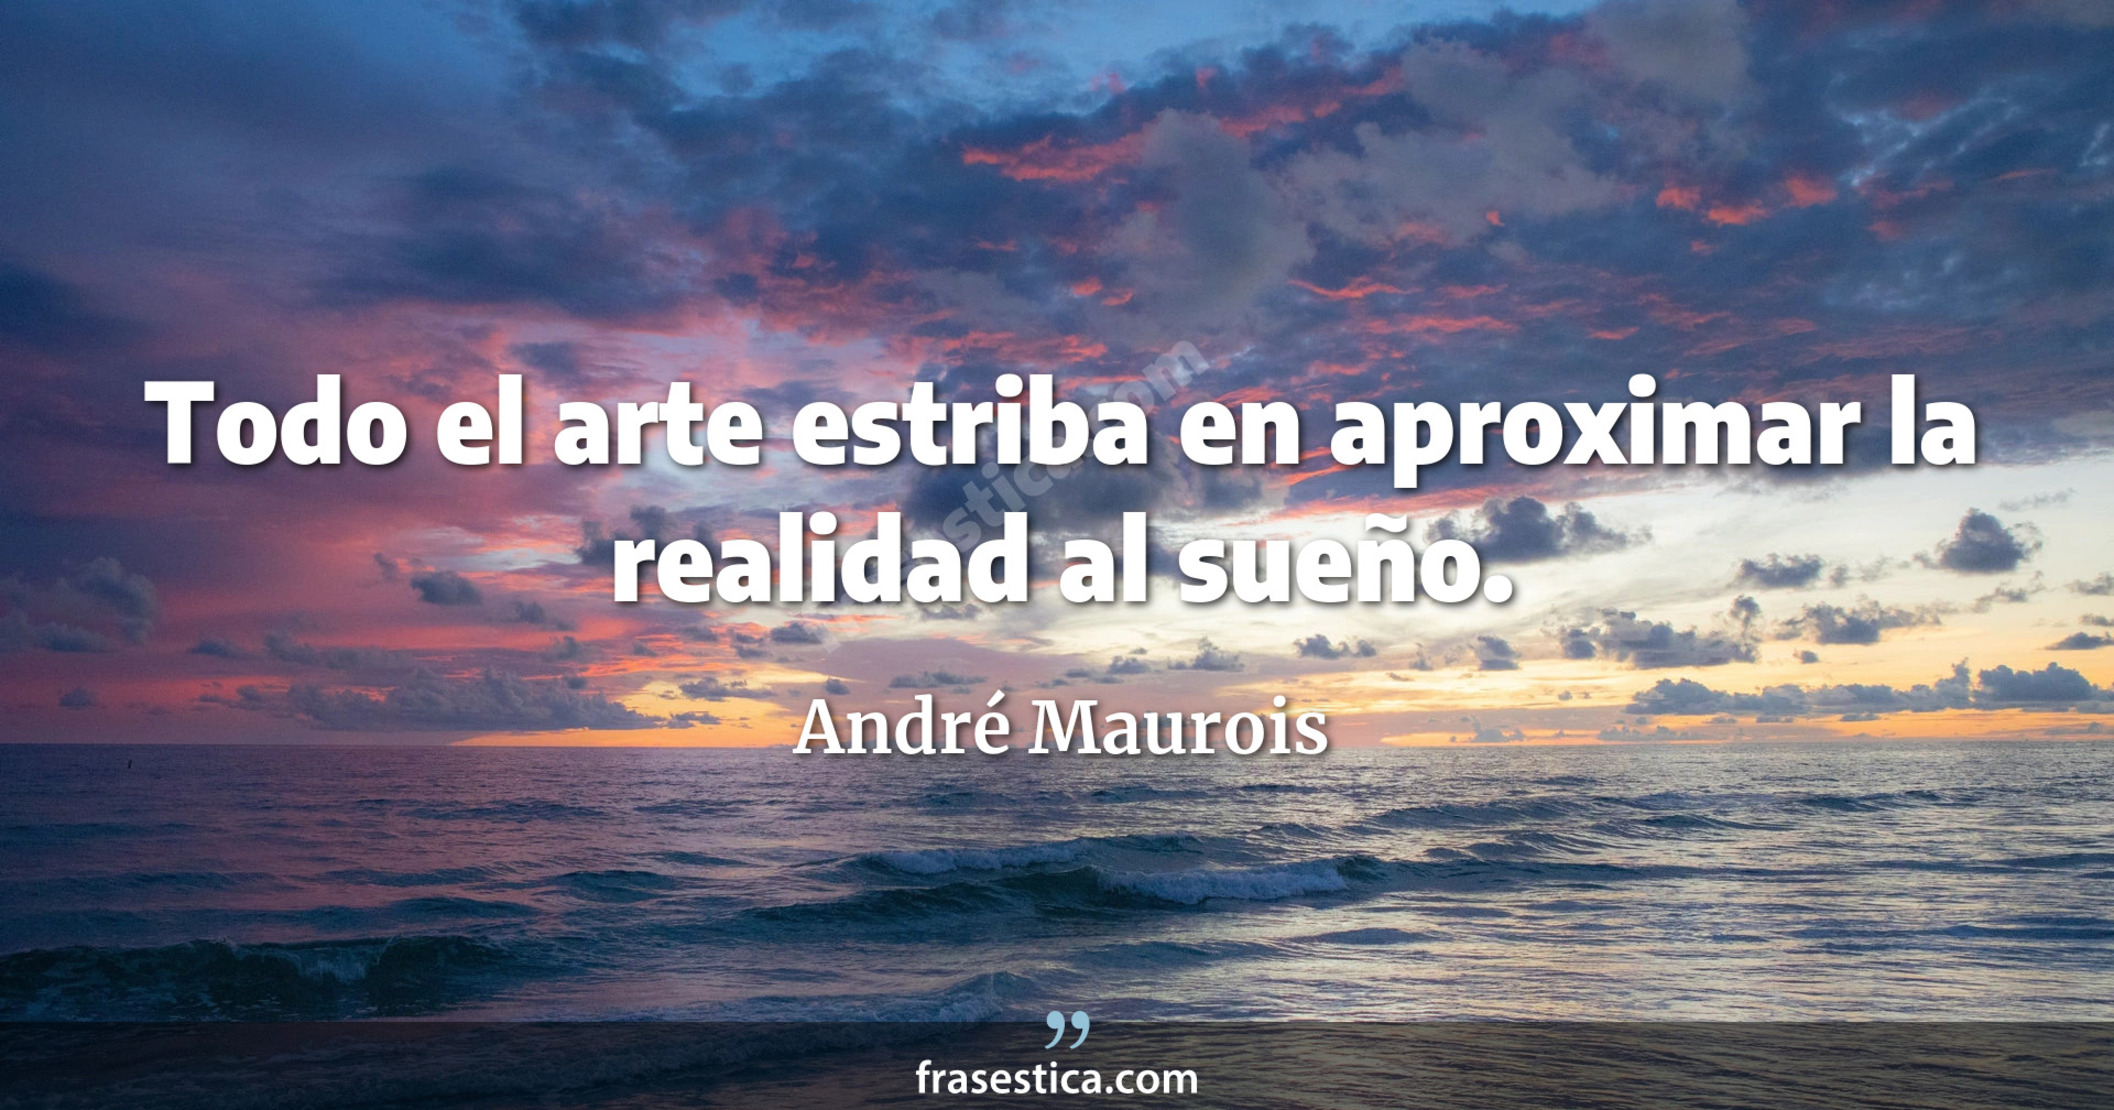 Todo el arte estriba en aproximar la realidad al sueño. - André Maurois